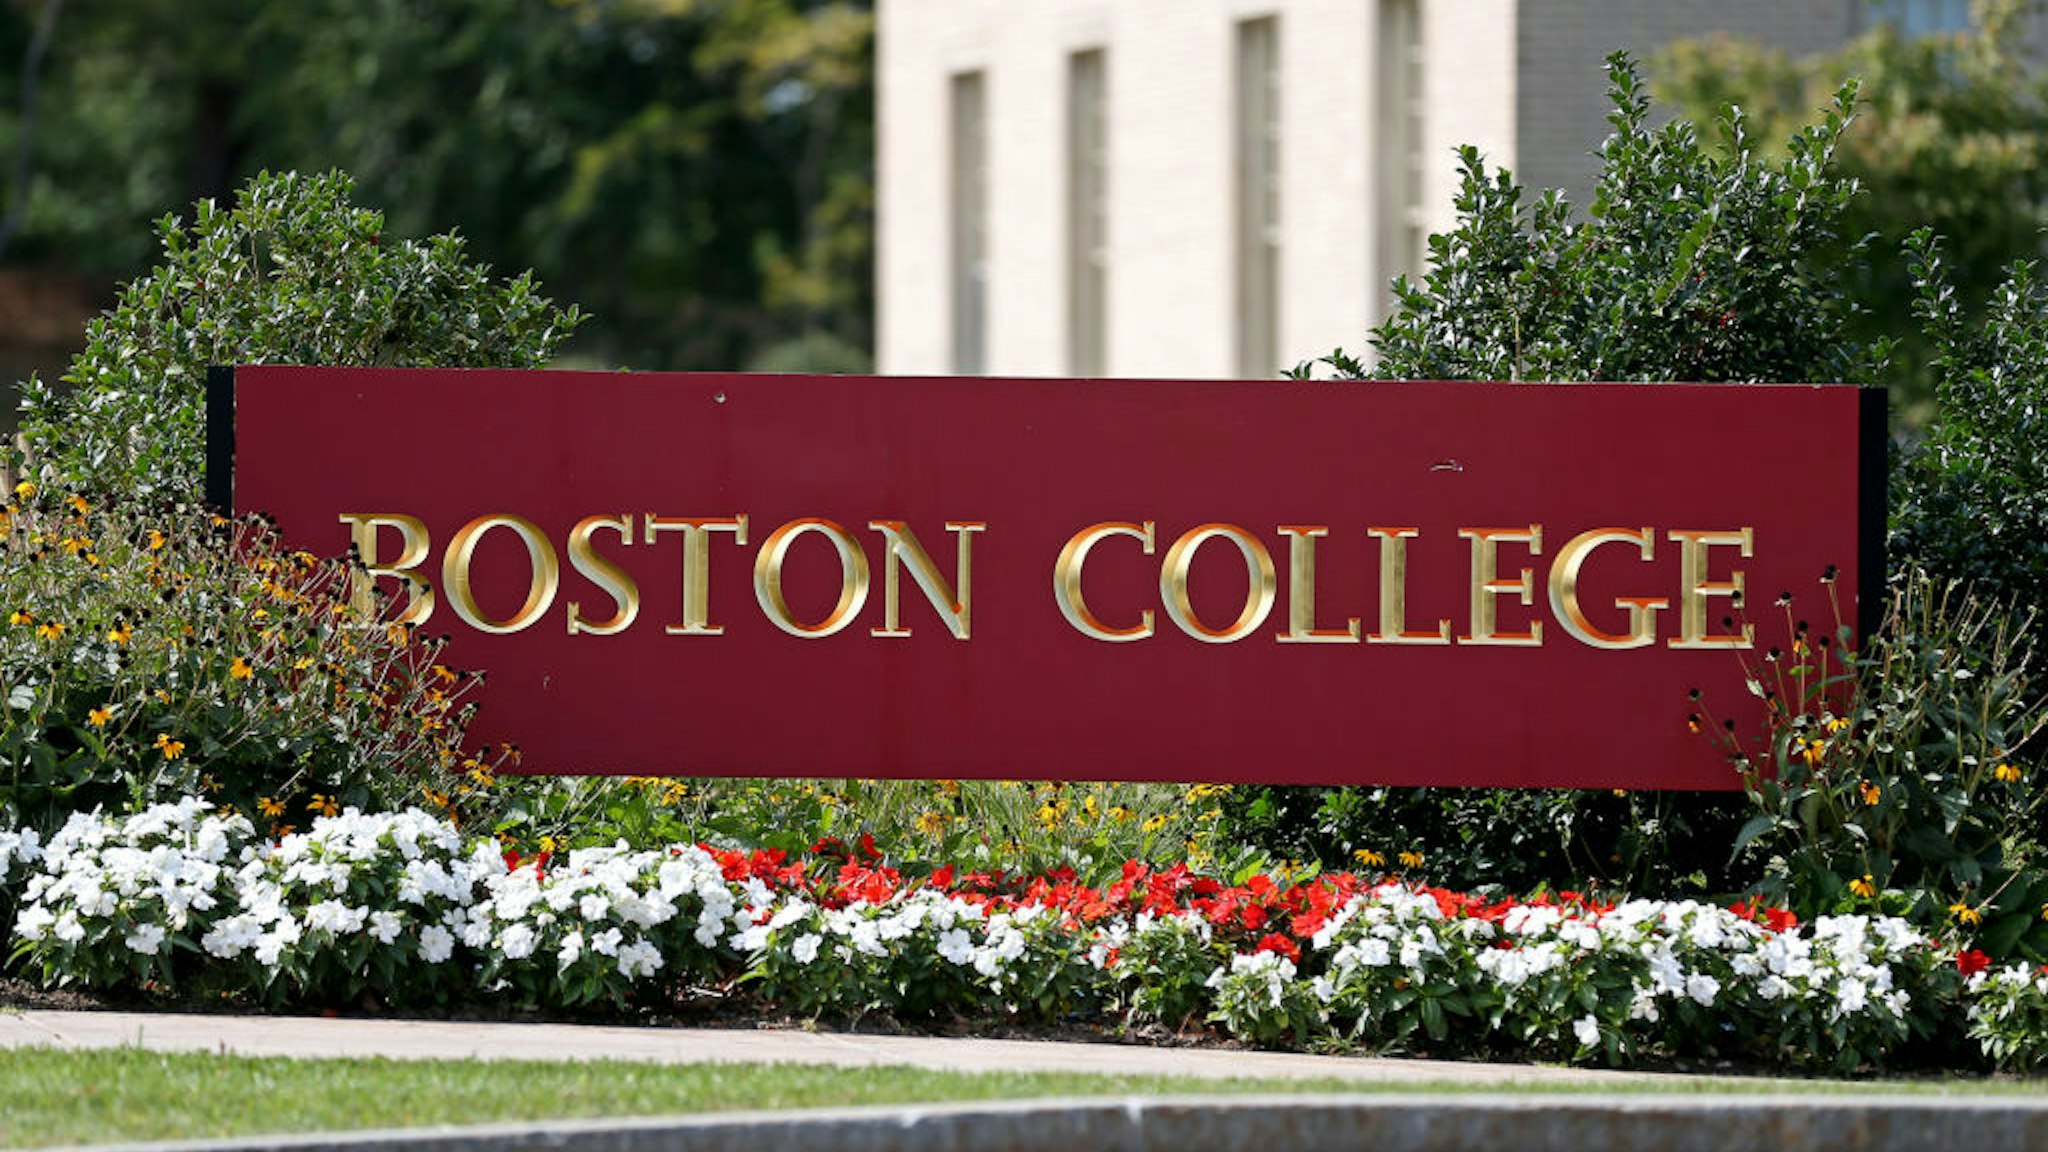 Boston College Campus on September 14, 2020 in Chestnut Hill, Massachusetts.